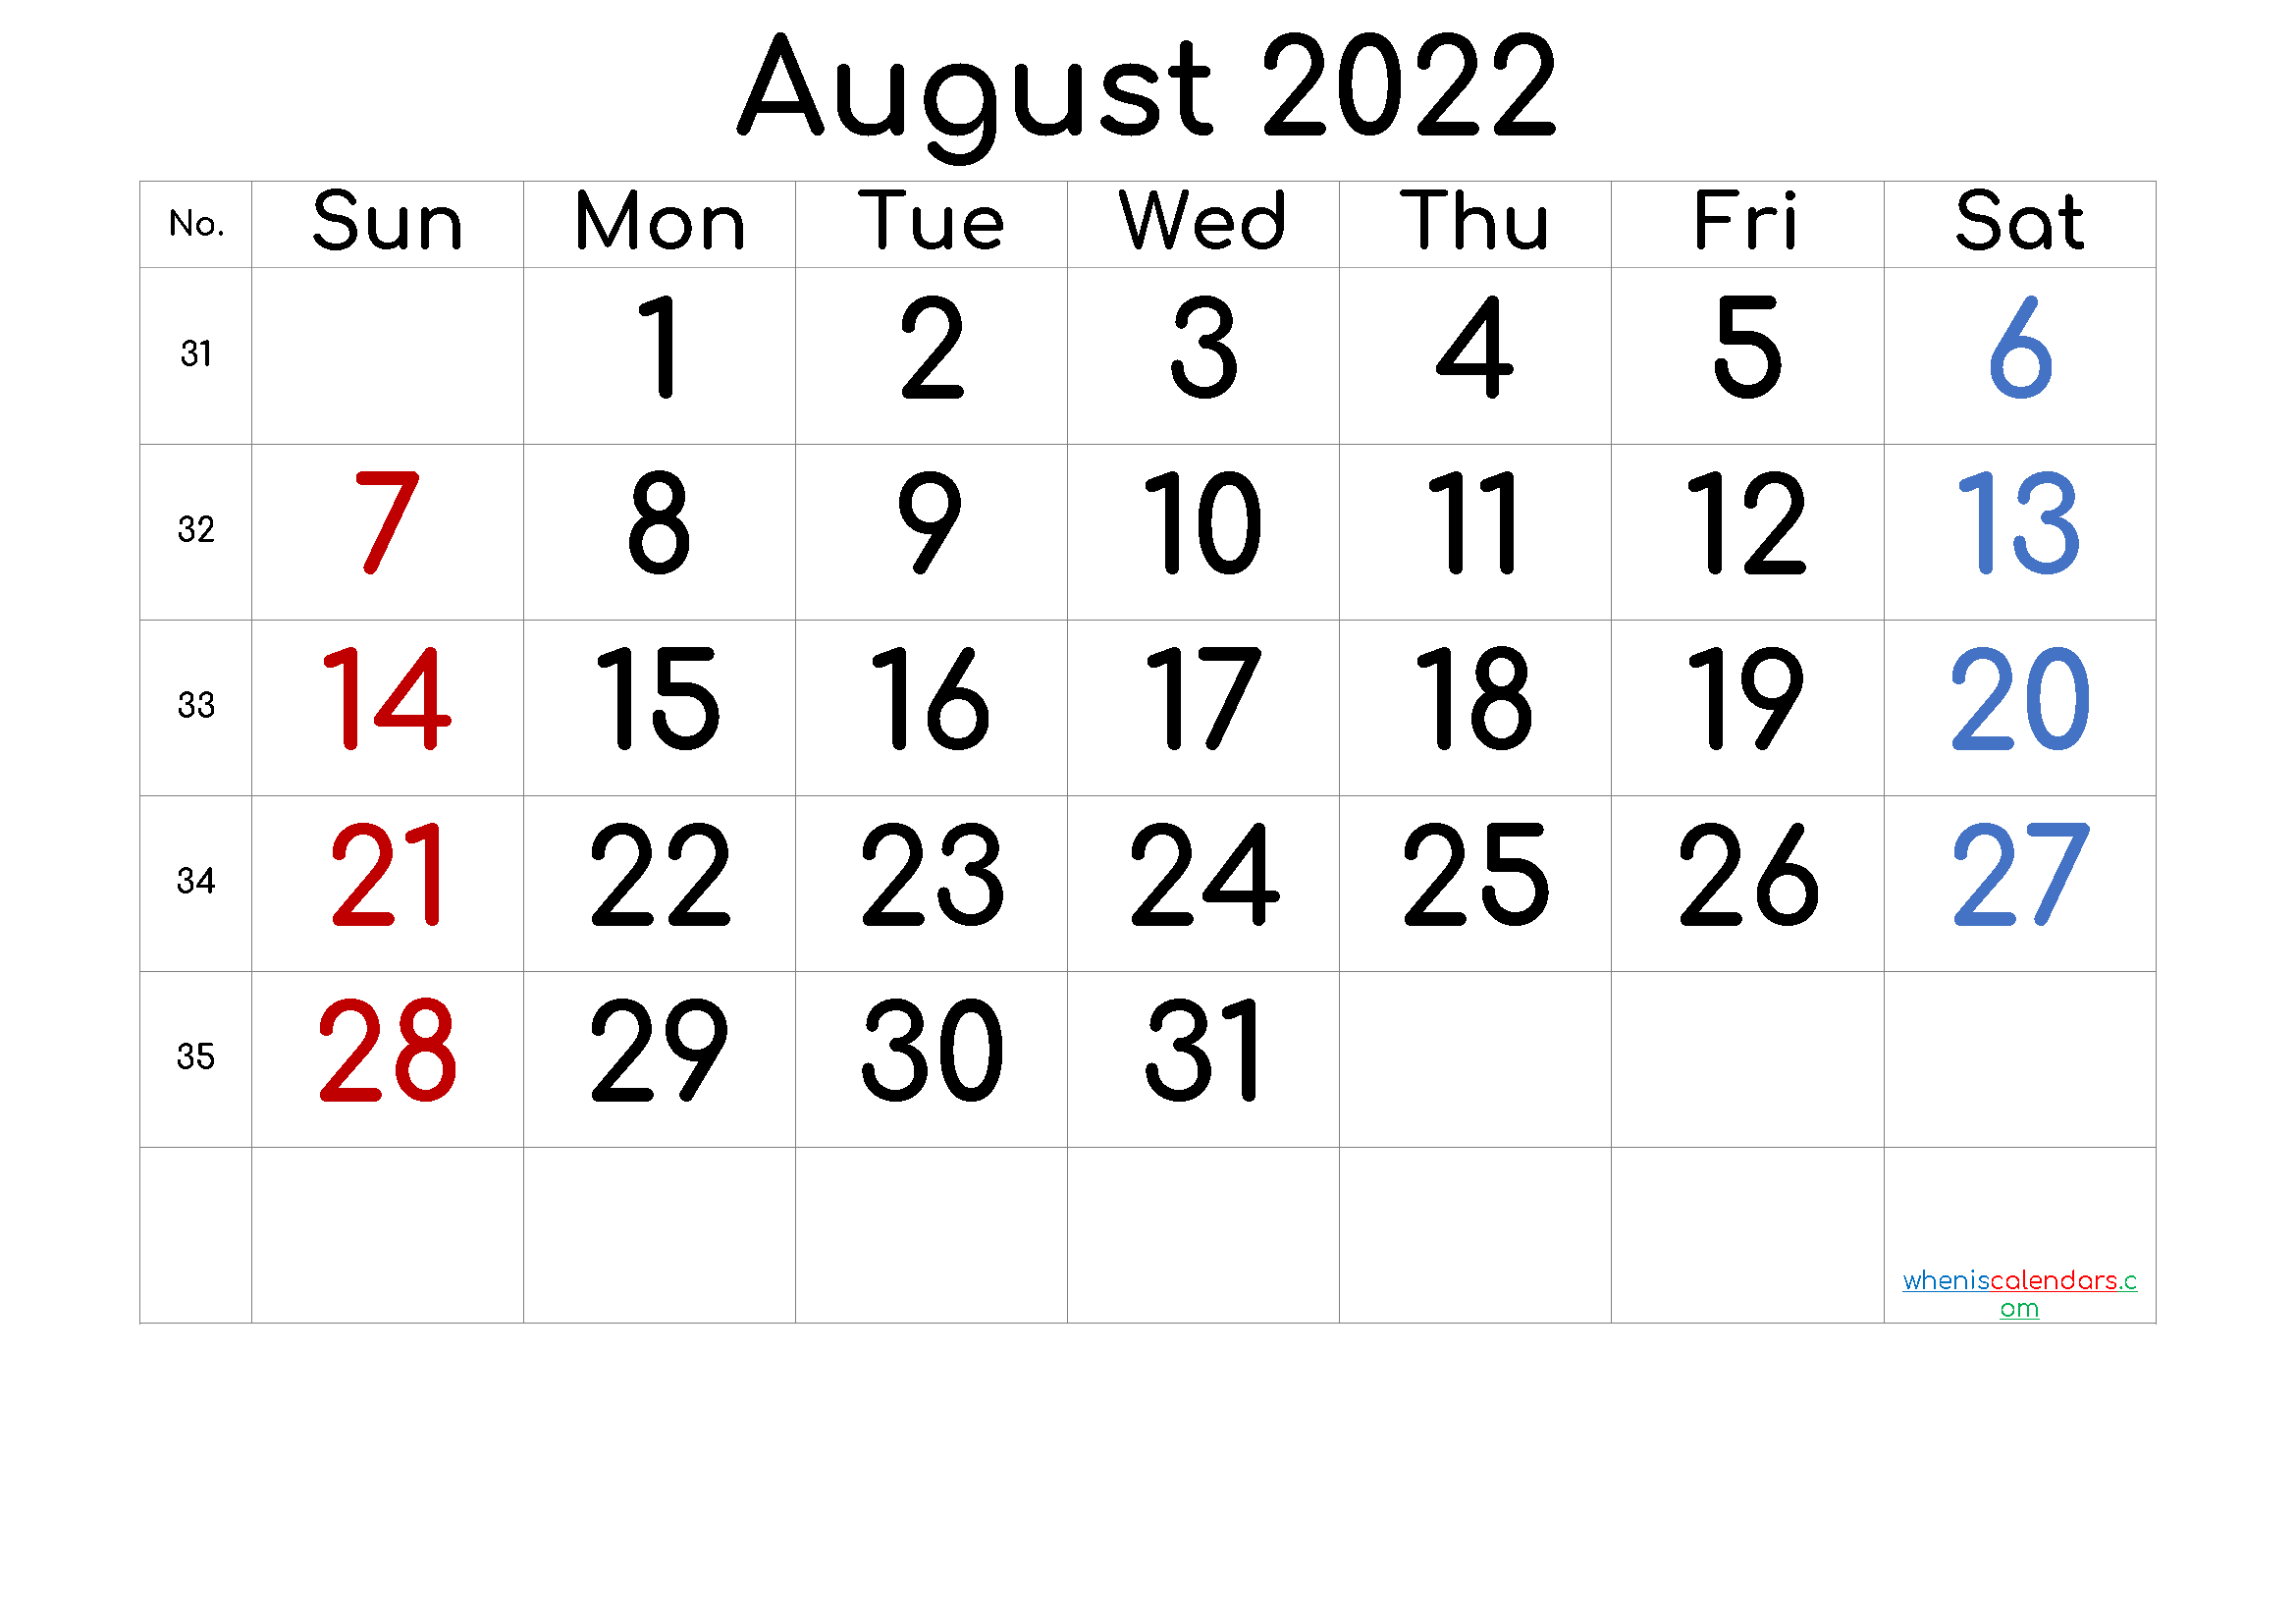 August 2022 Printable Calendar with Week Numbers